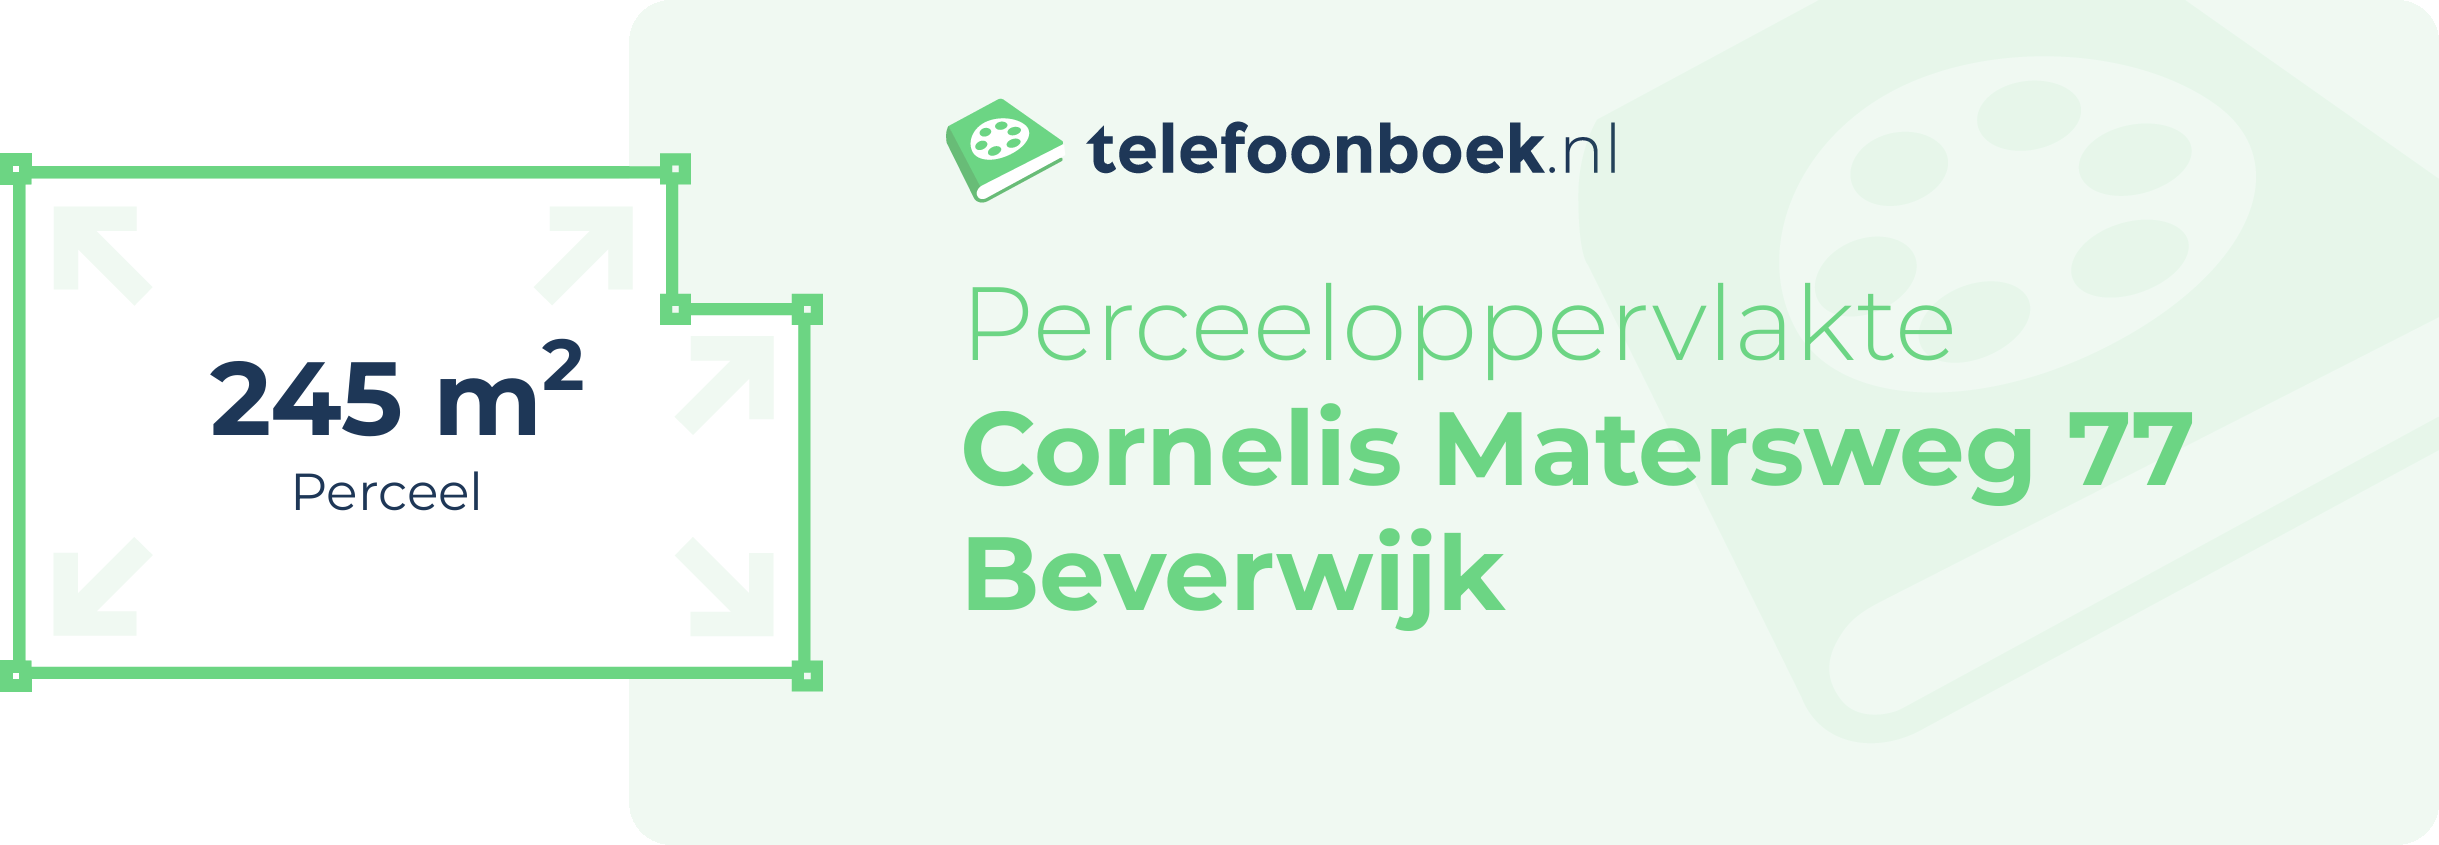 Perceeloppervlakte Cornelis Matersweg 77 Beverwijk